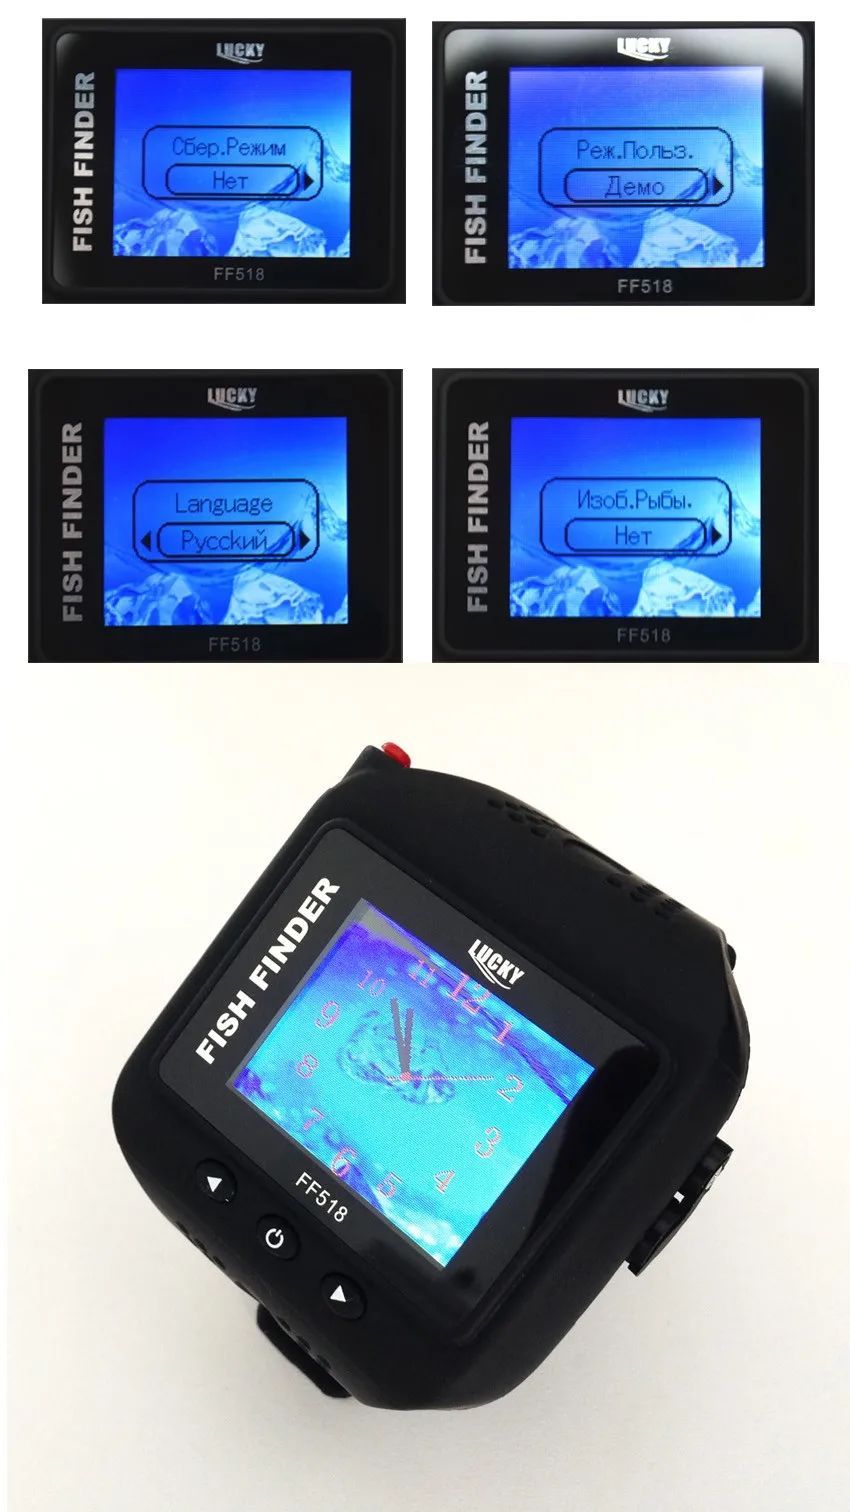 LUCKY Русская версия водонепроницаемые 1,7" цветные цифровые часы типа 200 футов(60 метров) Радиус действия беспроводной и Режим часов рыболокатор